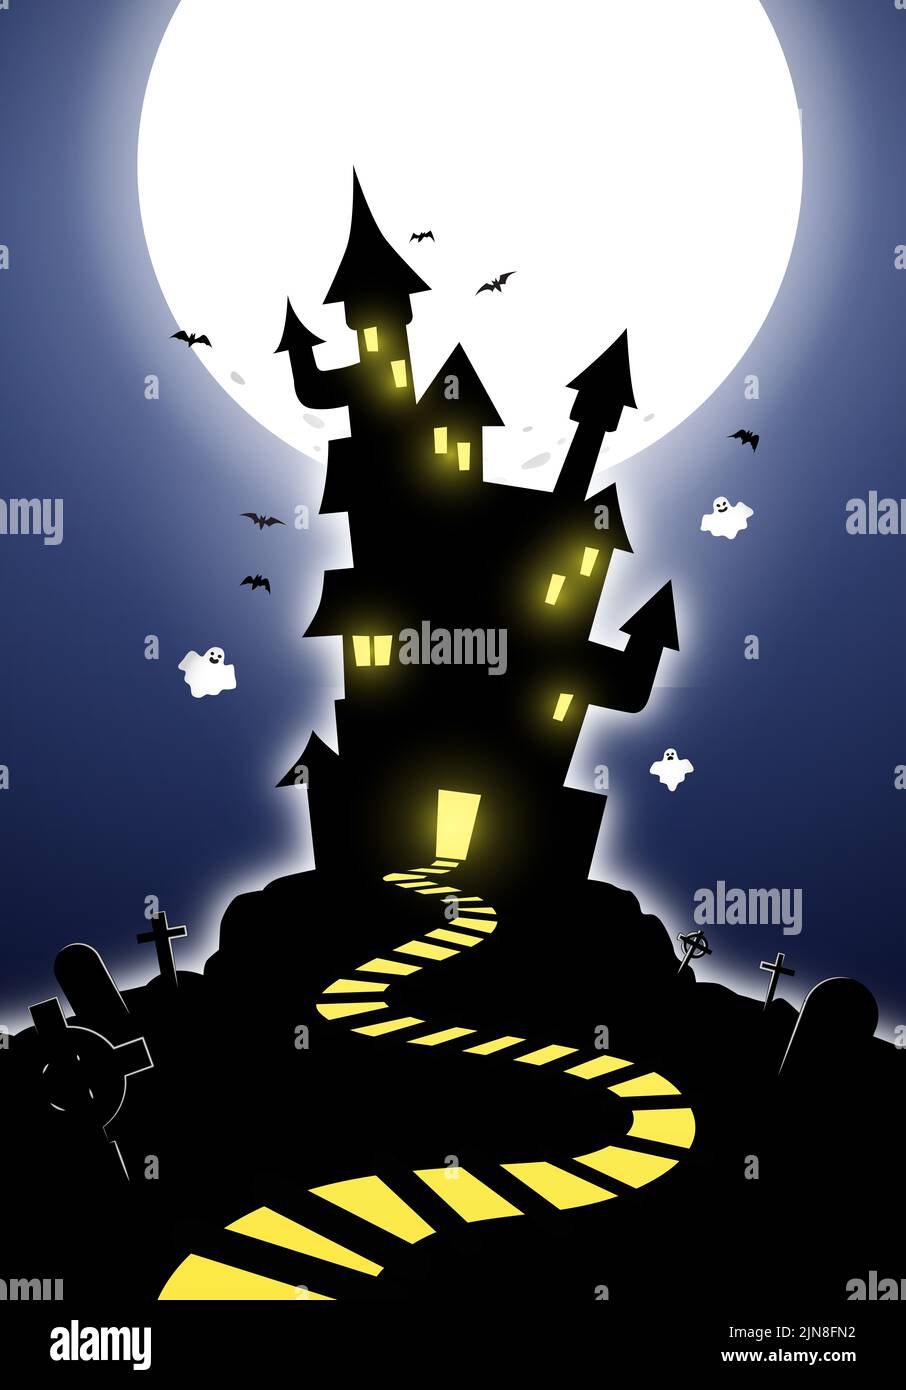 Halloween Party Feier Poster Illustration. Dunkle Haunted Castle mit einem Friedhof. Vollmond mit Geistern, die in einem Nachthimmel fliegen. Stockfoto